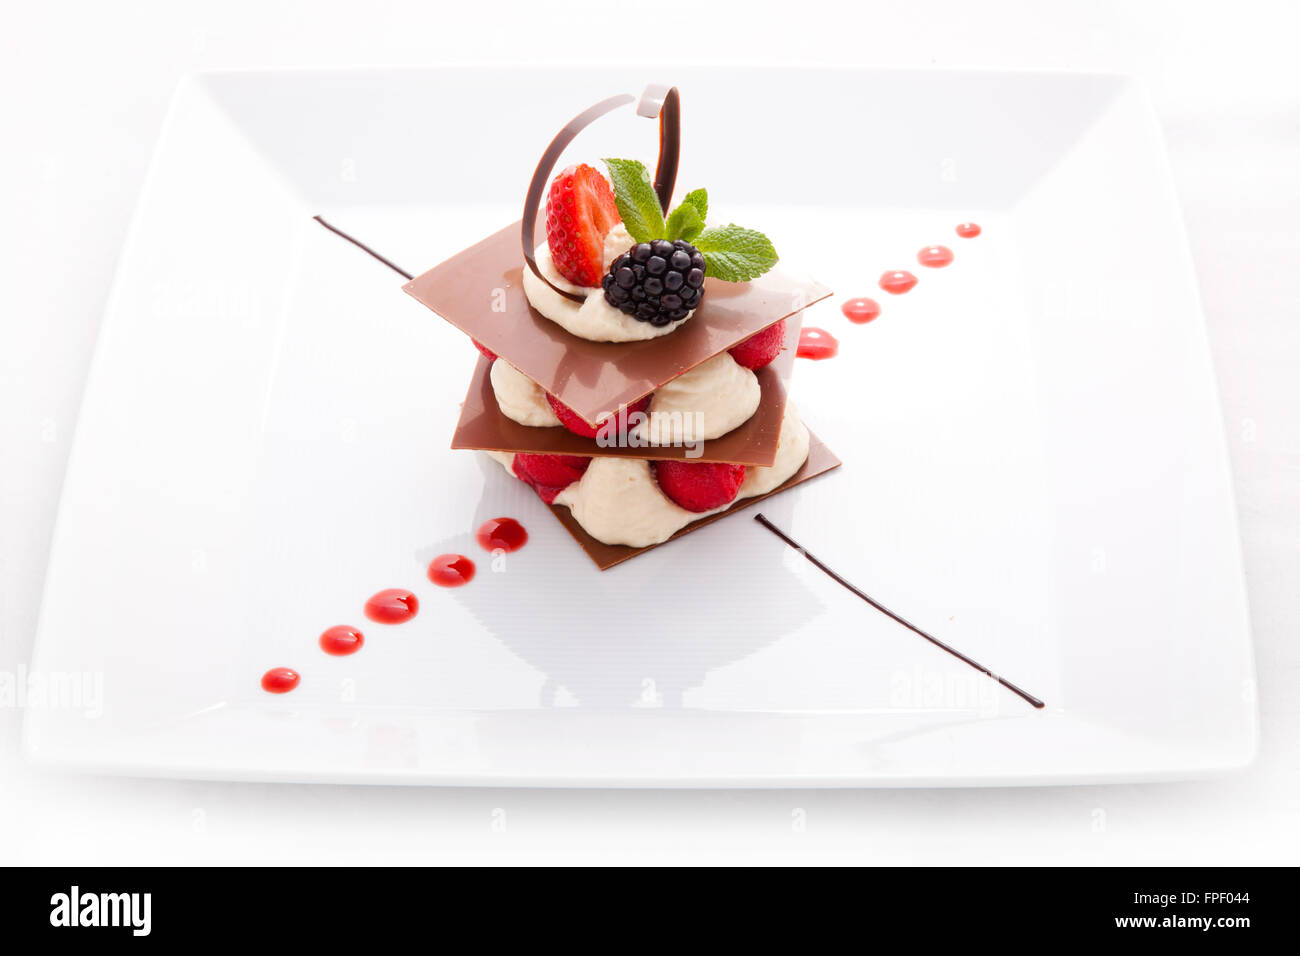 Dessert of thin layers chocolate, cream, berries Stock Photo